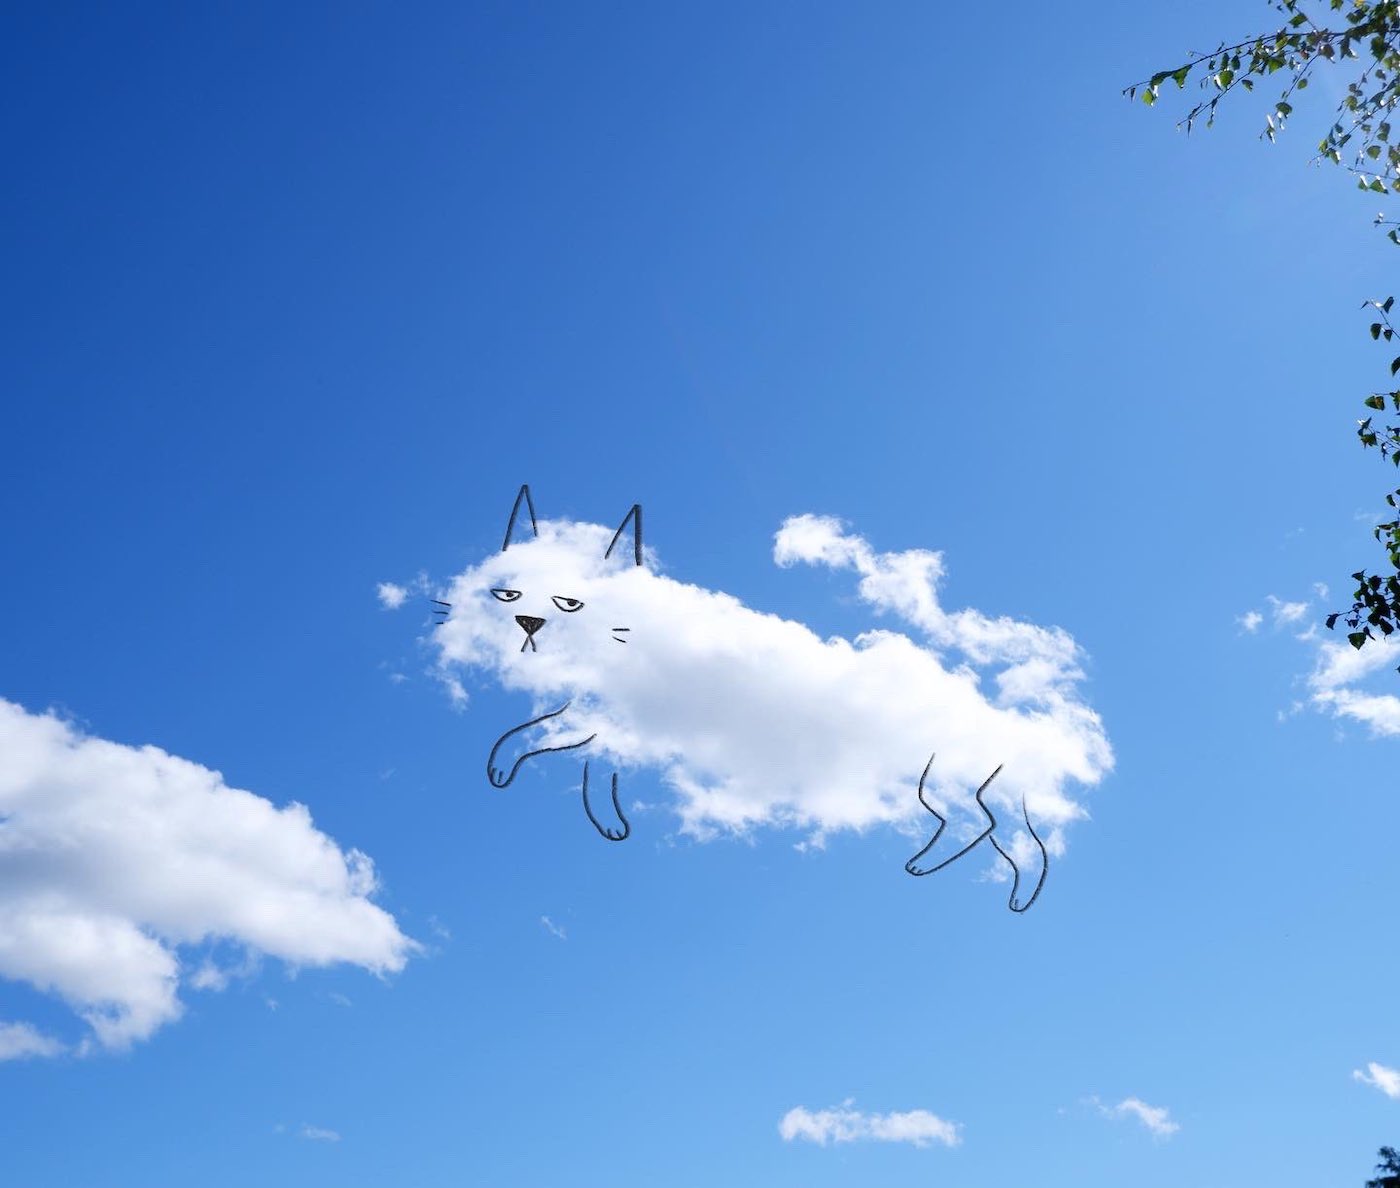 L'illustrateur Chris Judge transforme les nuages en personnages créatifs